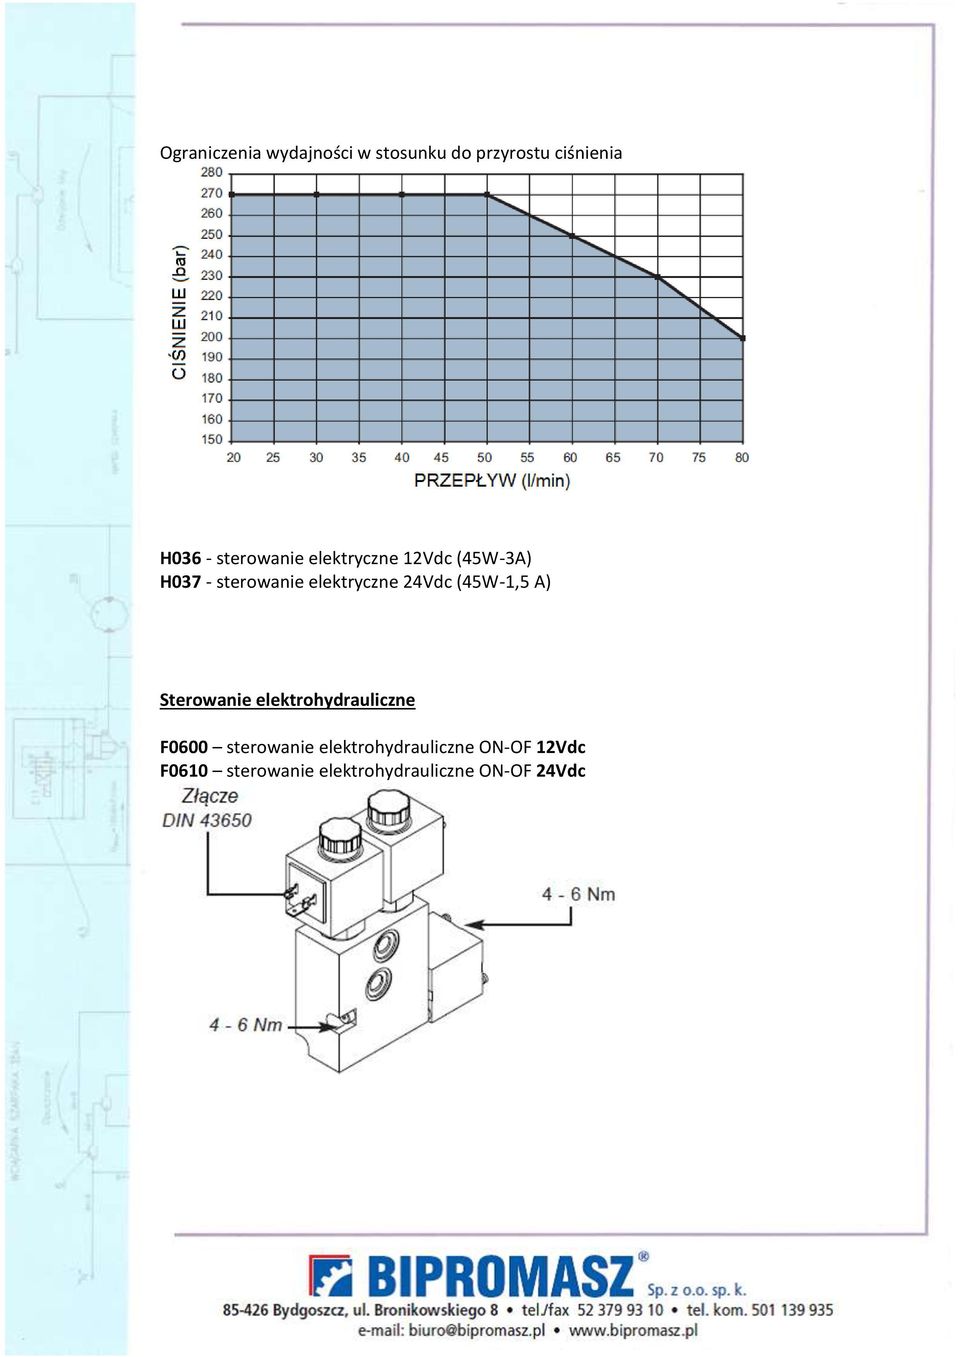 24Vdc (45W-1,5 A) Sterowanie elektrohydrauliczne F0600 sterowanie